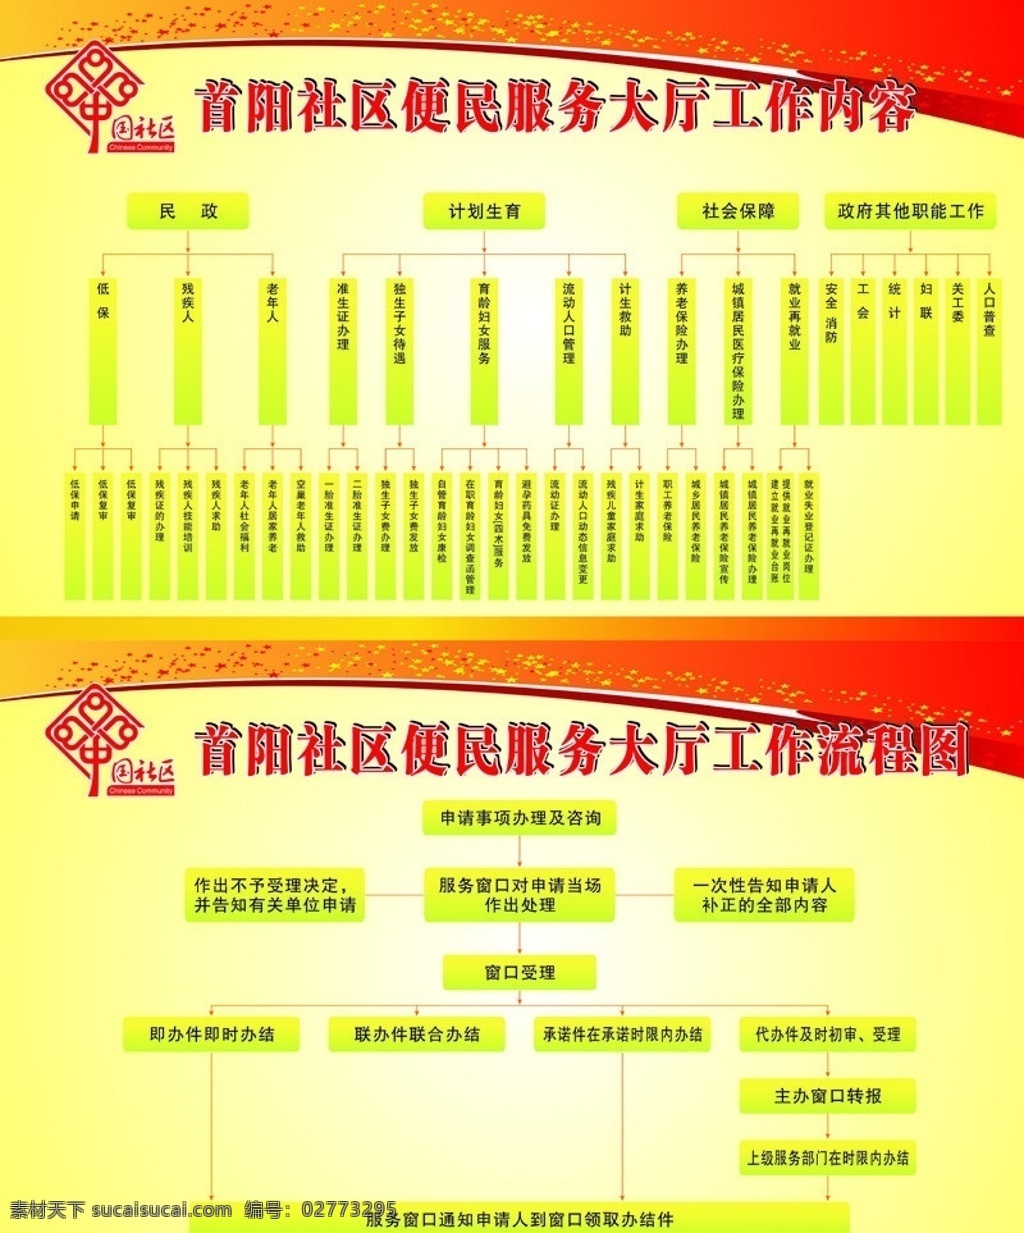 便民服务 大厅 工作内容 流程图 社区流程图 中国社区标志 展板模版 红色背景 矢量